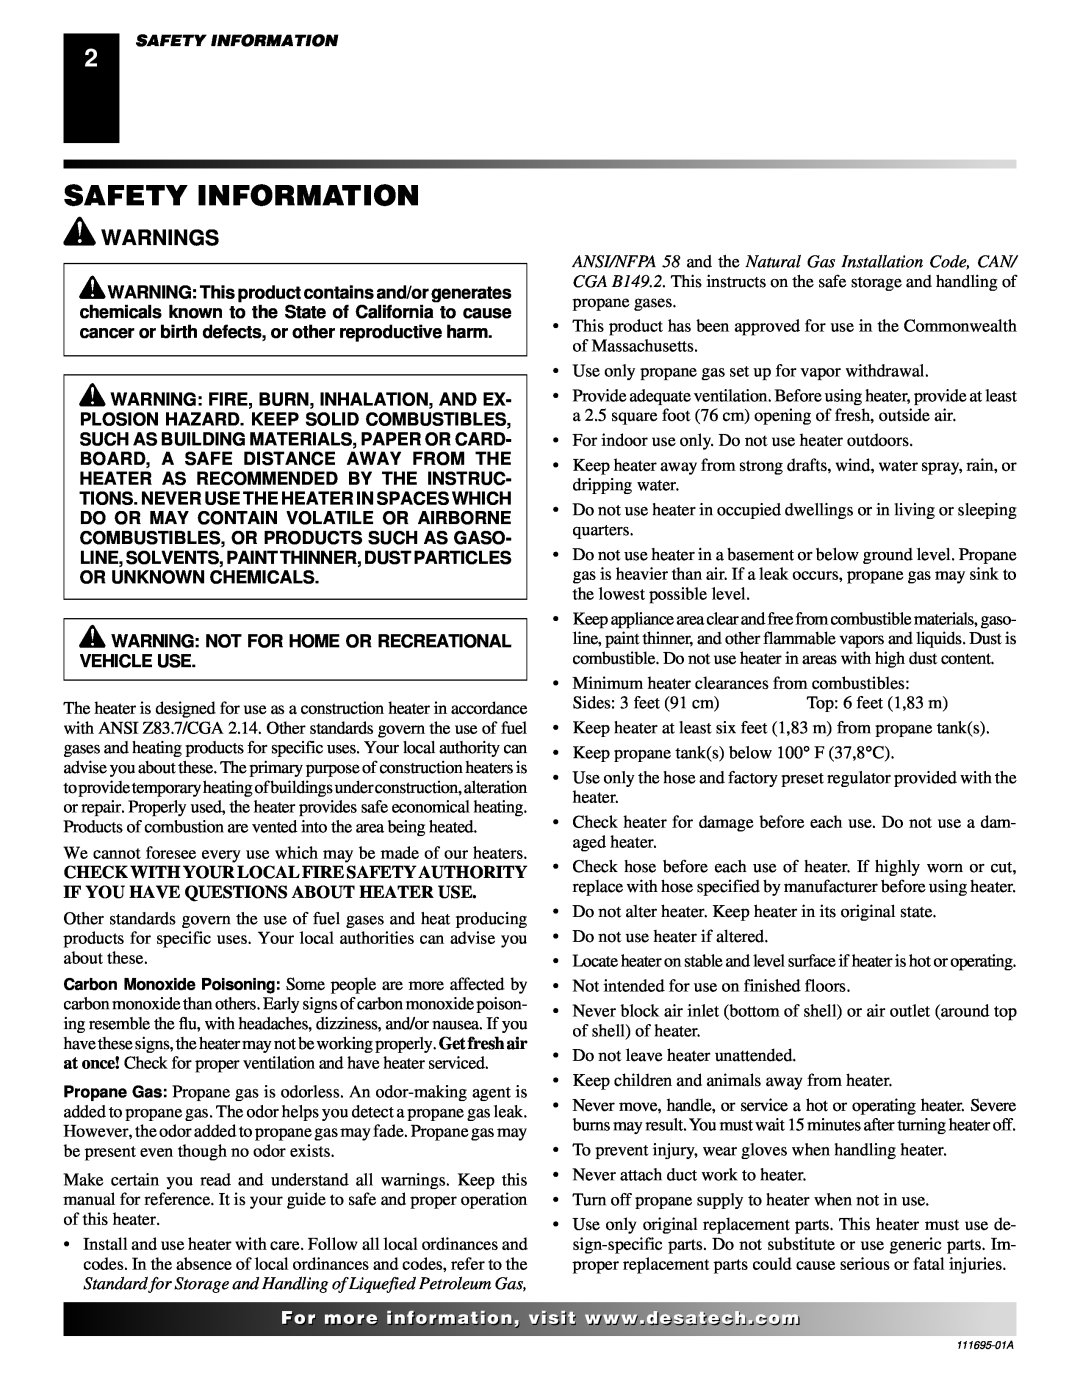 Desa 000 Btu/hr Models owner manual Safety Information, Warnings 